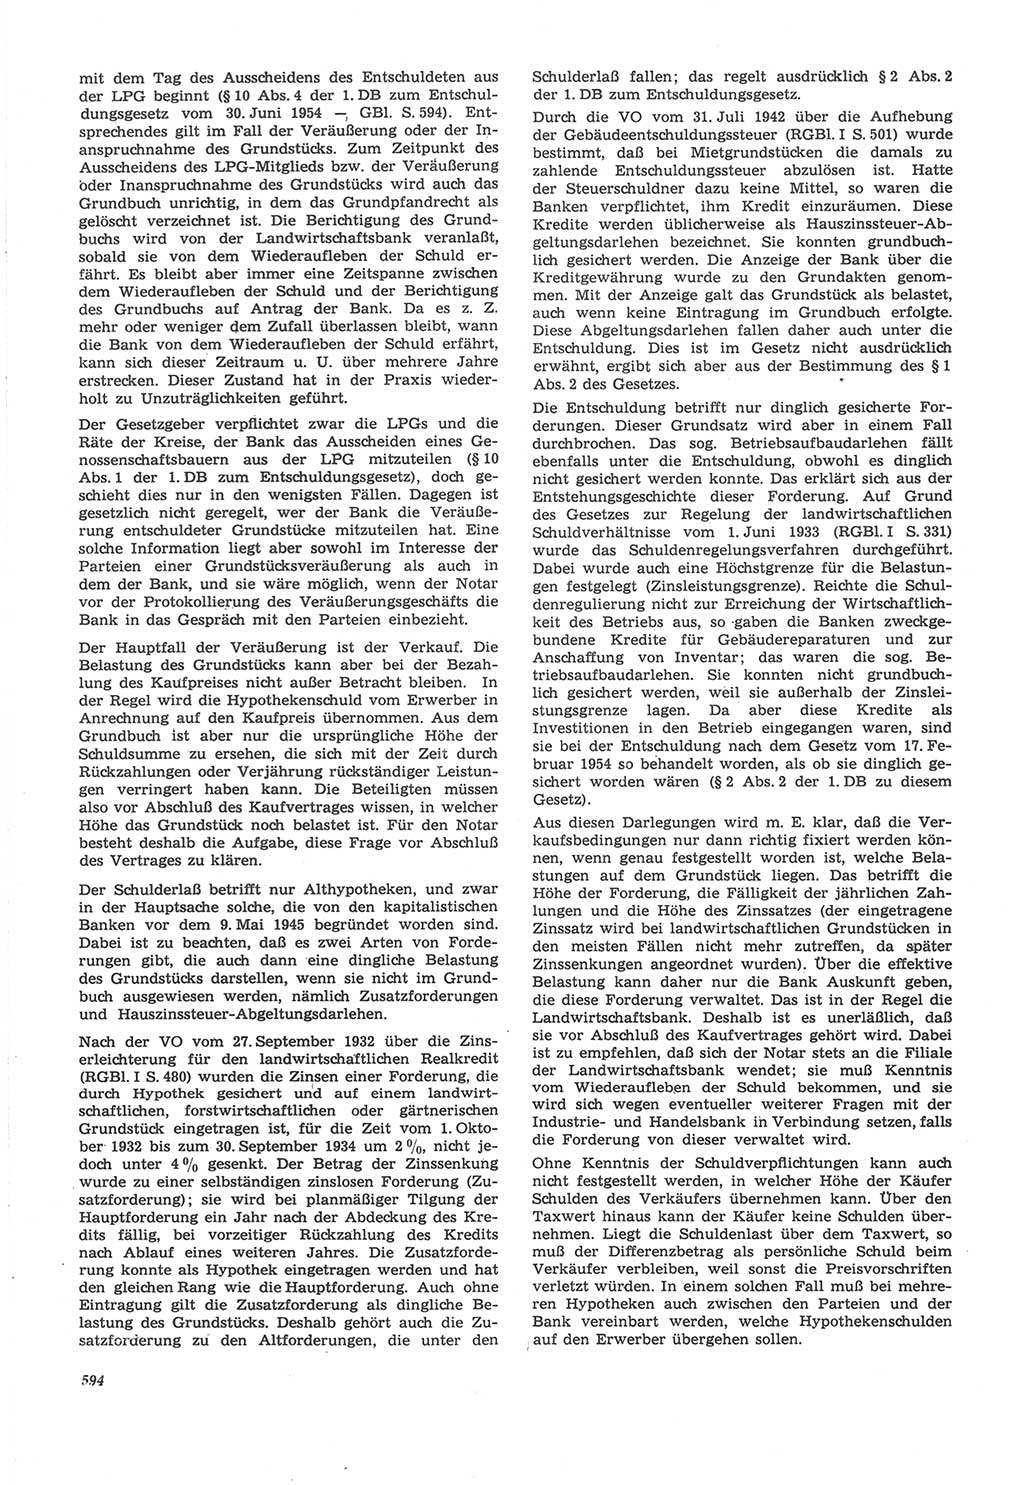 Neue Justiz (NJ), Zeitschrift für Recht und Rechtswissenschaft [Deutsche Demokratische Republik (DDR)], 22. Jahrgang 1968, Seite 594 (NJ DDR 1968, S. 594)